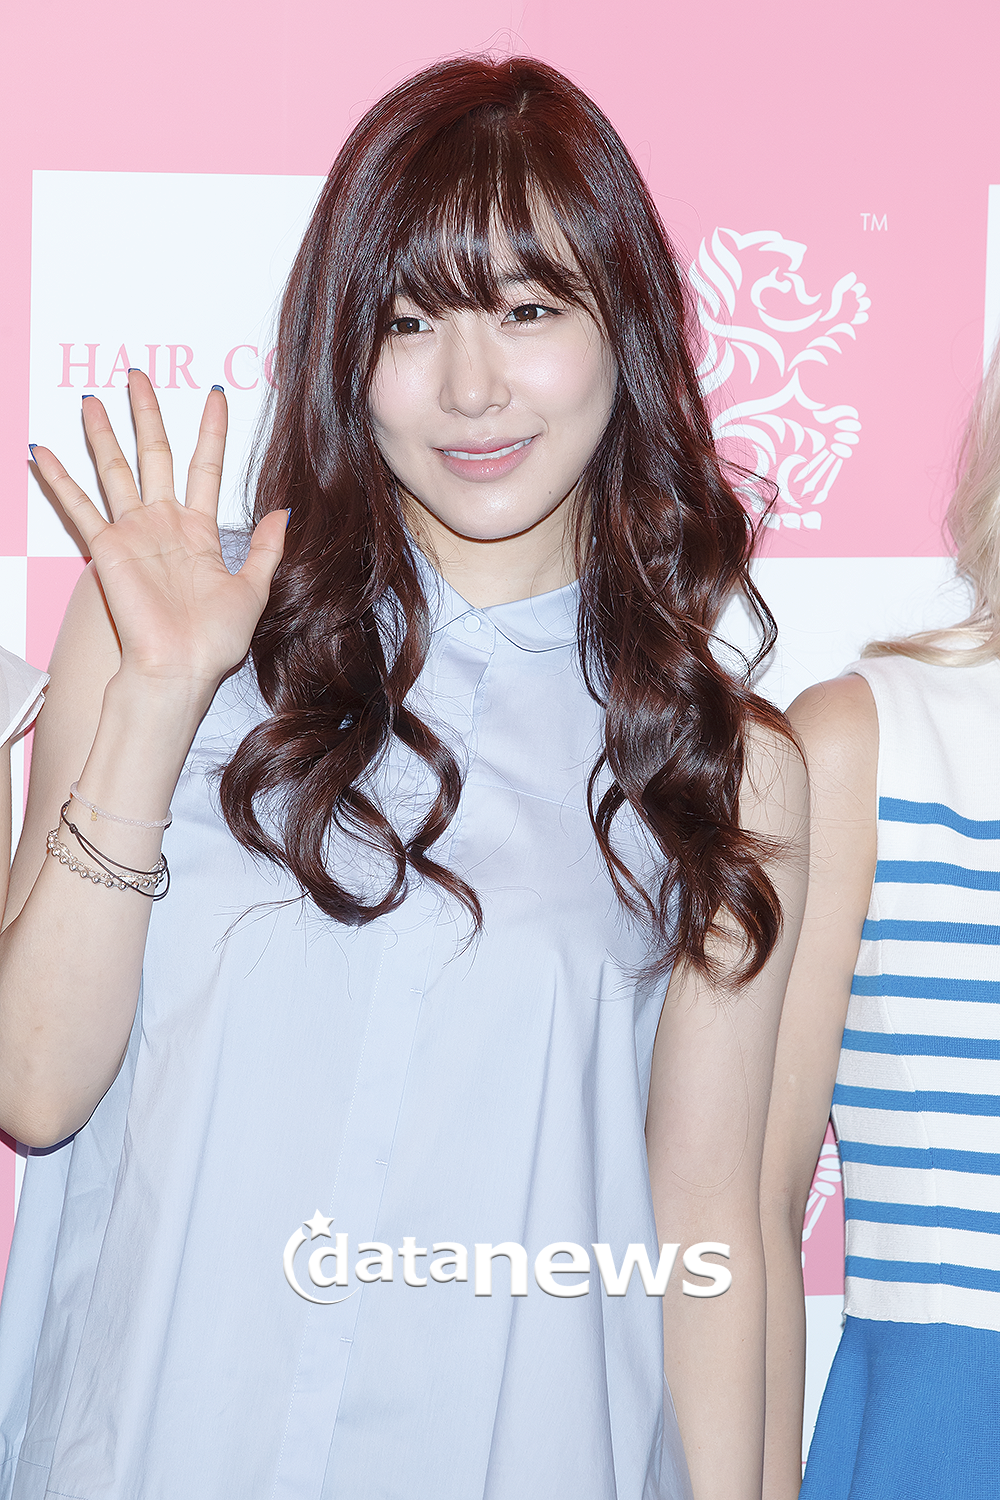 [PIC][26-07-2013]Tiffany - TaeYoen - SeoHyun và HyoYeon xuất hiện tại buổi fansign cho "Hair Couture" vào chiều nay 2329B03D51F66FDF200B75